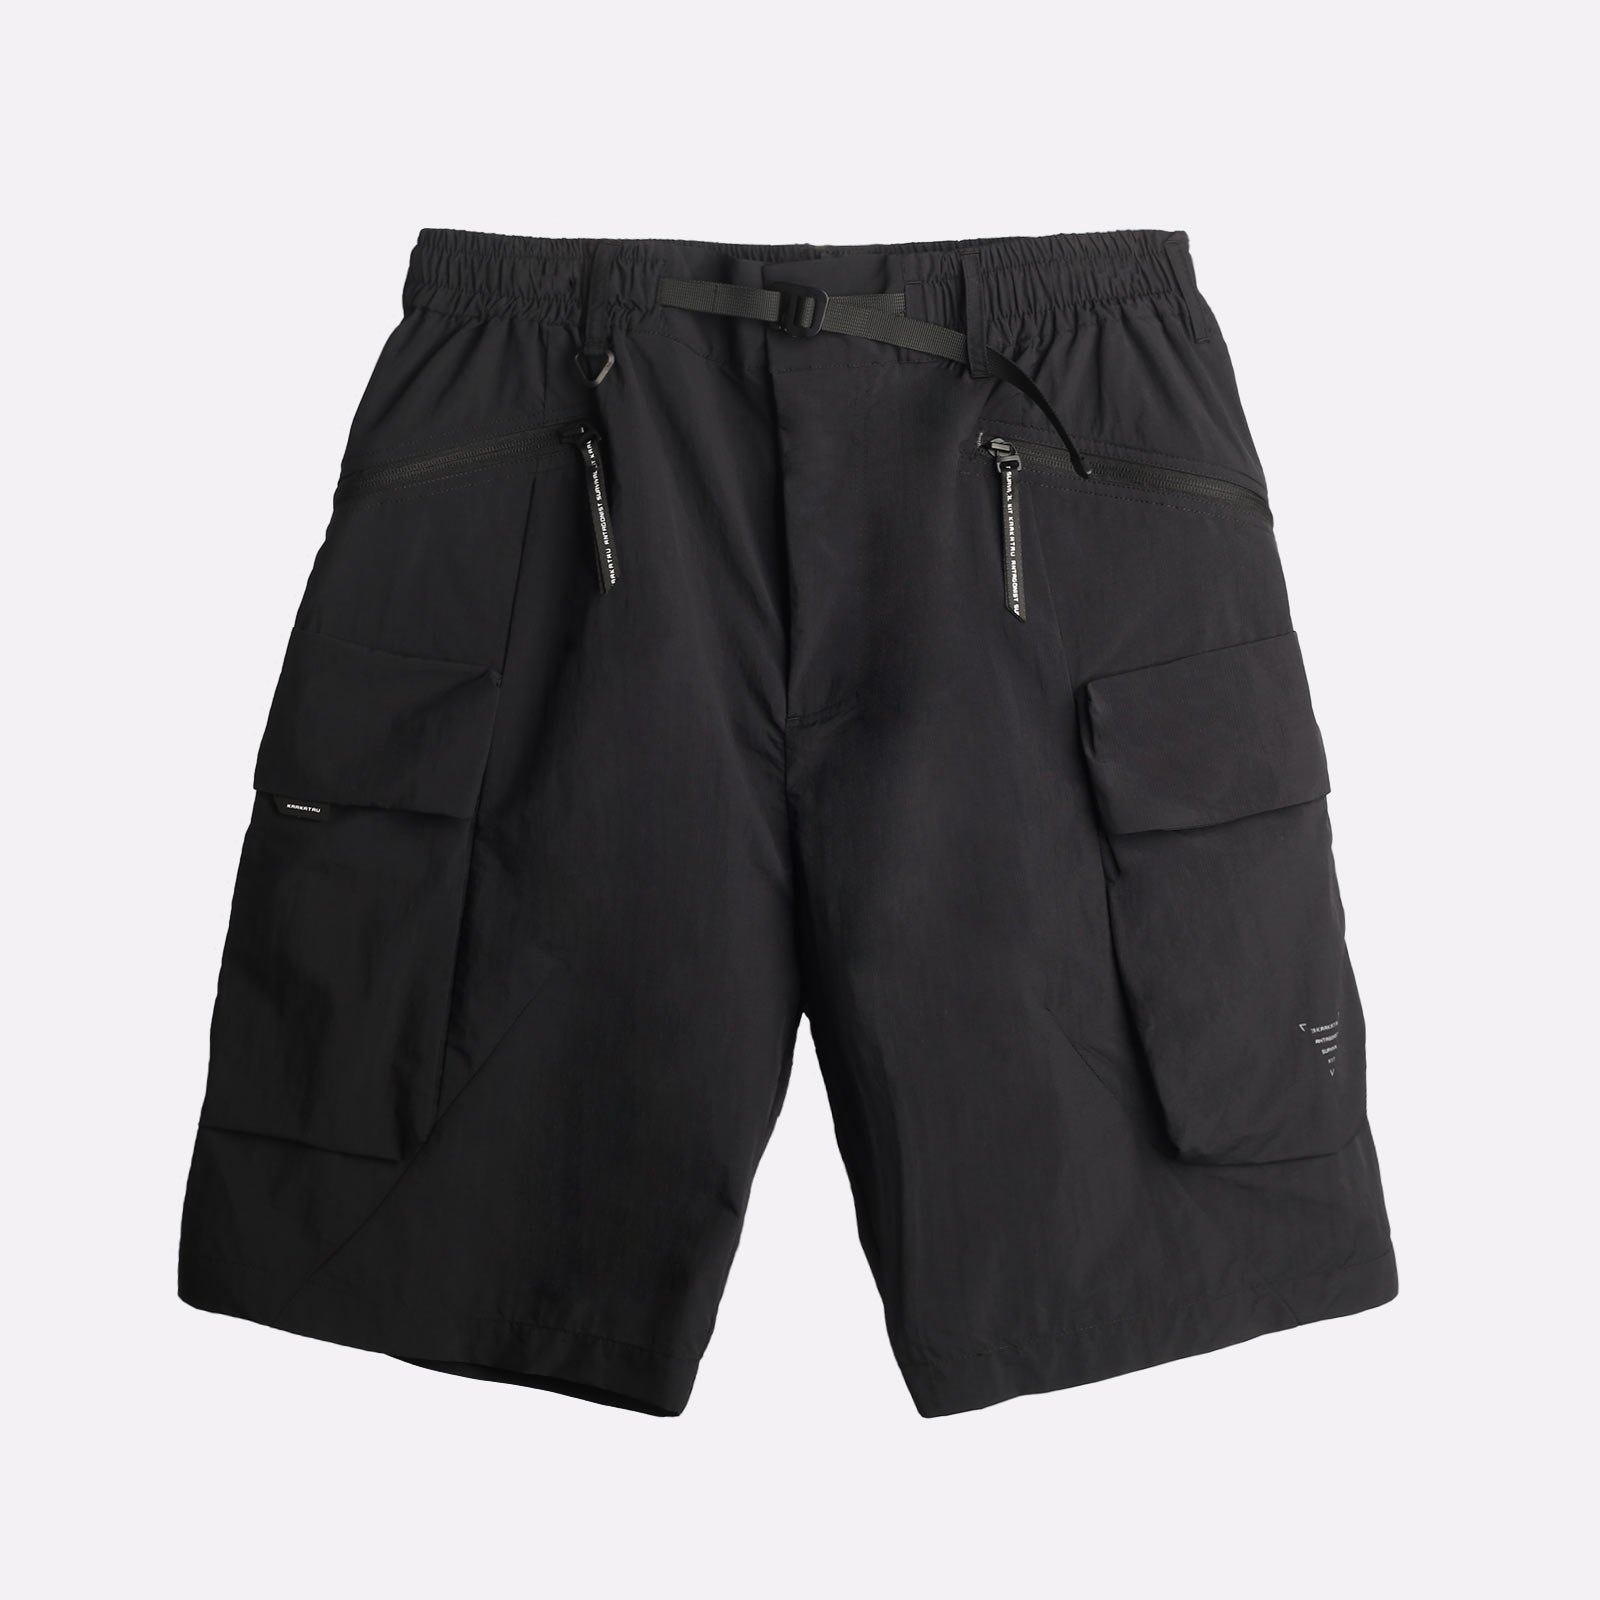 мужские шорты KRAKATAU Rm184-1  (Rm184-1-чёрный)  - цена, описание, фото 1